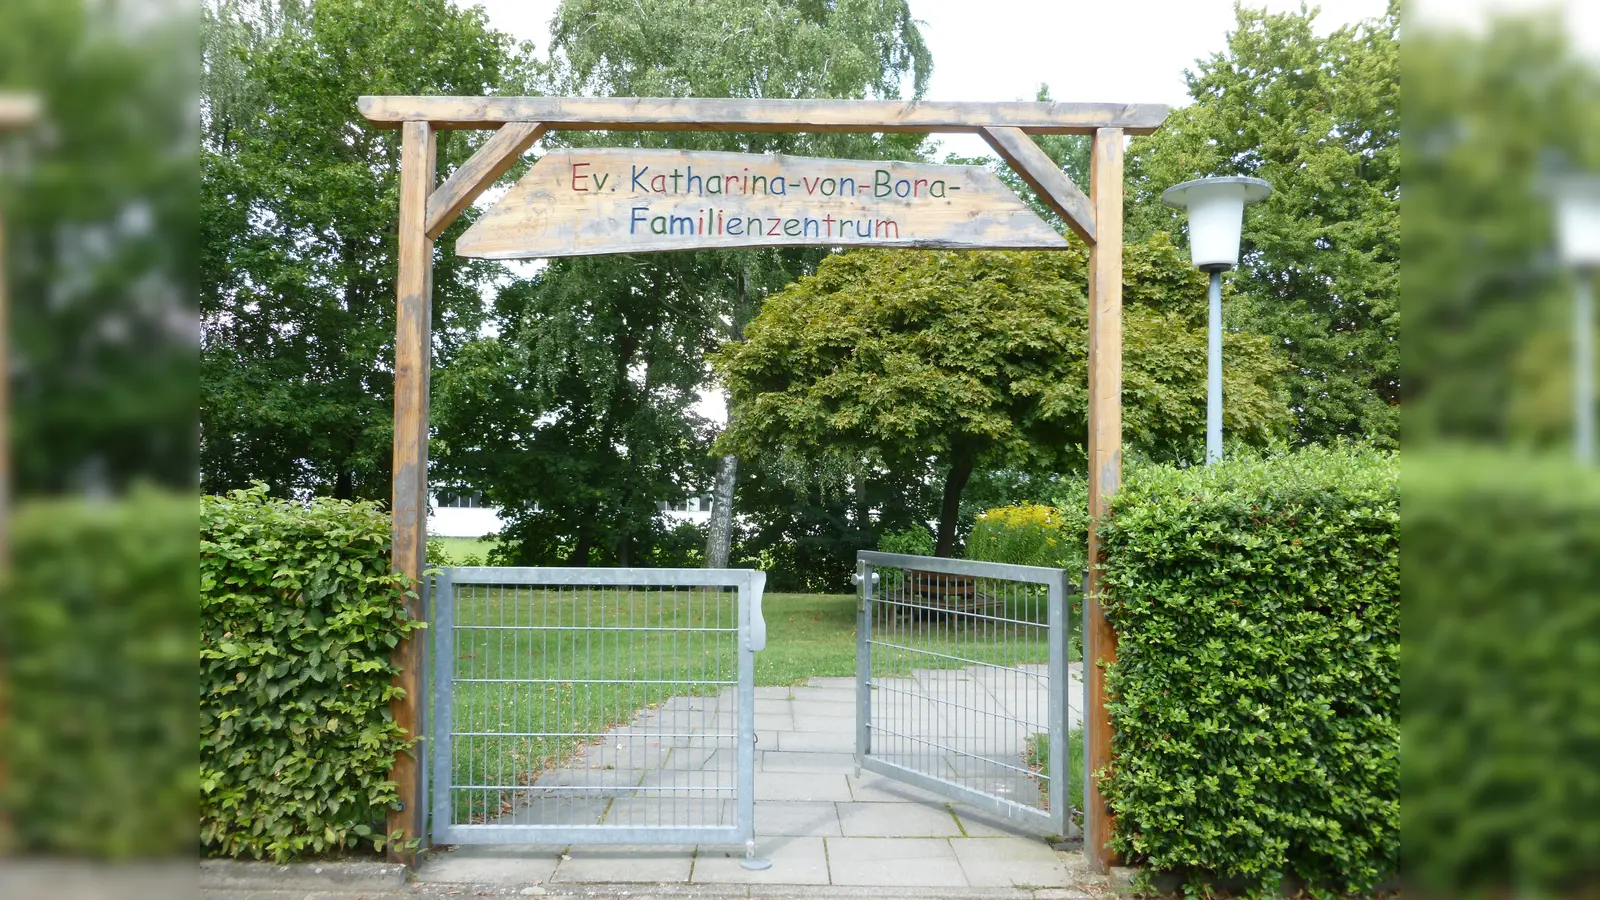 Das Ev. Katharina-von-Bora Familienzentrum öffnet die Tore zum Sommerfest. (Foto: privat)